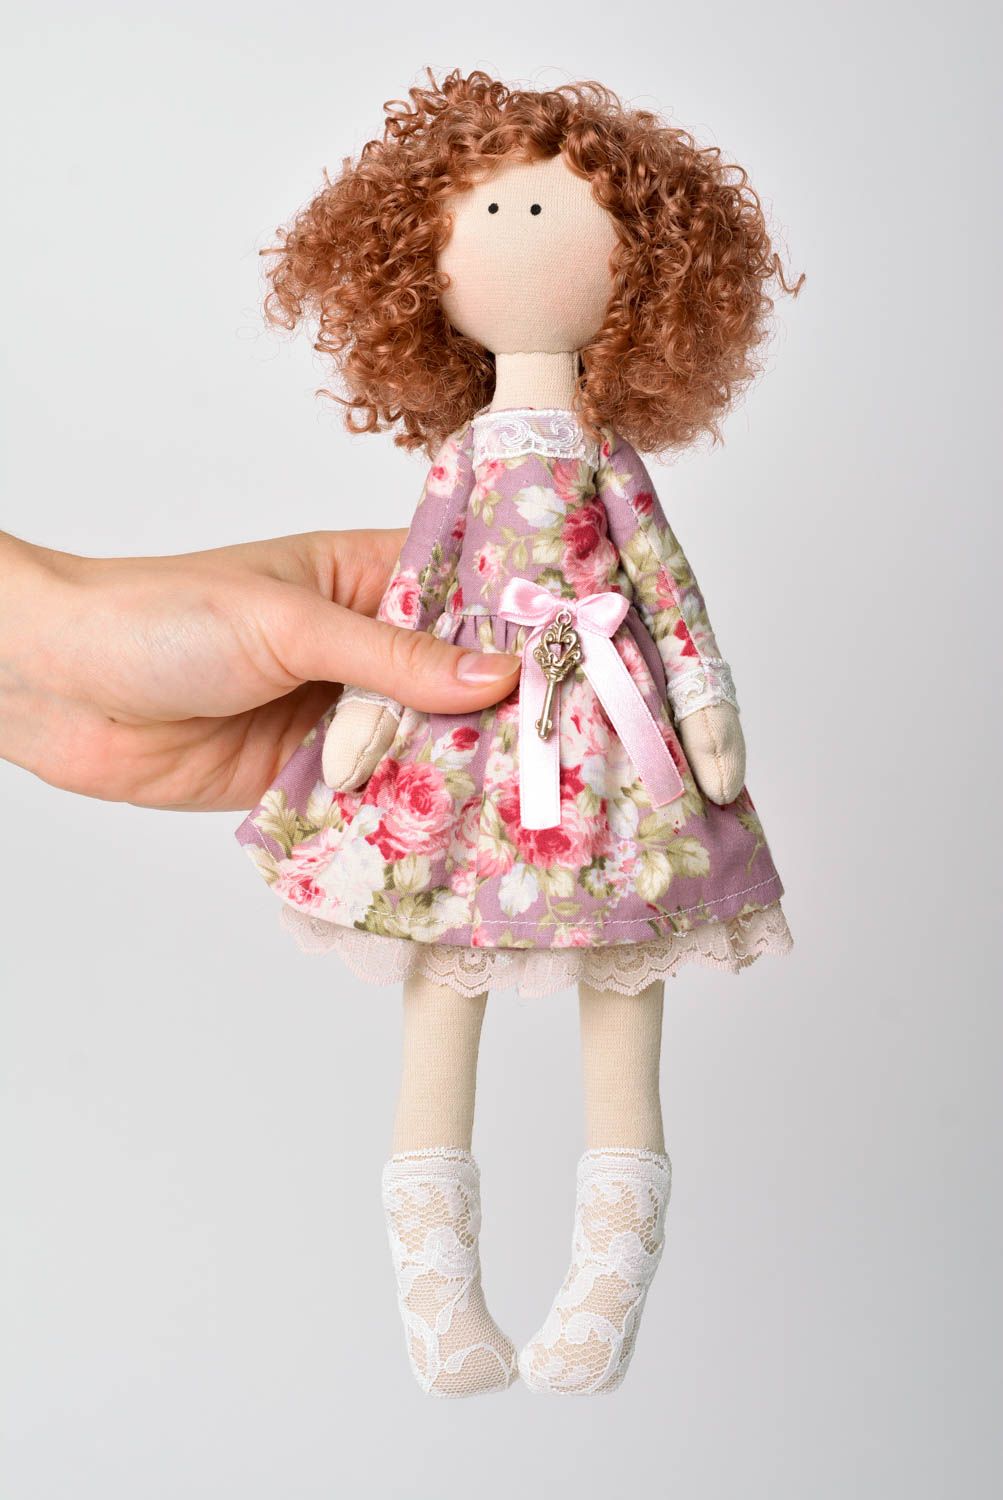 Puppe handgemacht Stoff Puppe Geschenk Idee ausgefallenes Spielzeug mit Ständer foto 2